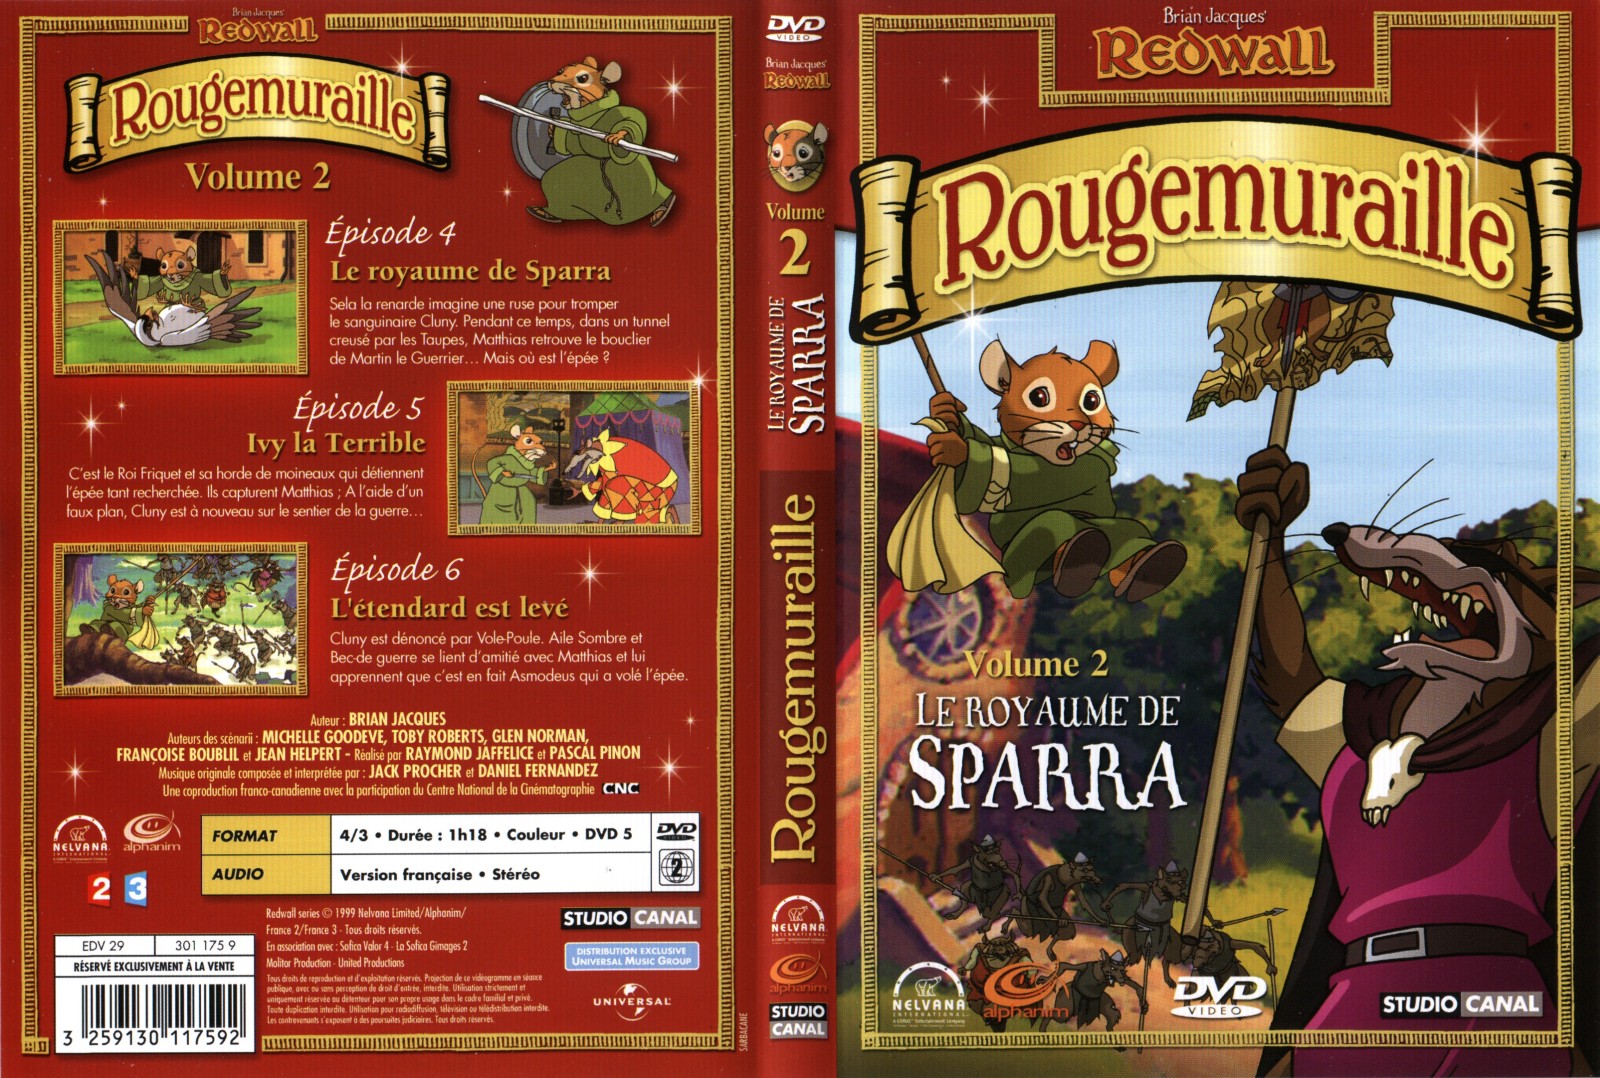 Jaquette DVD Rougemuraille vol 2